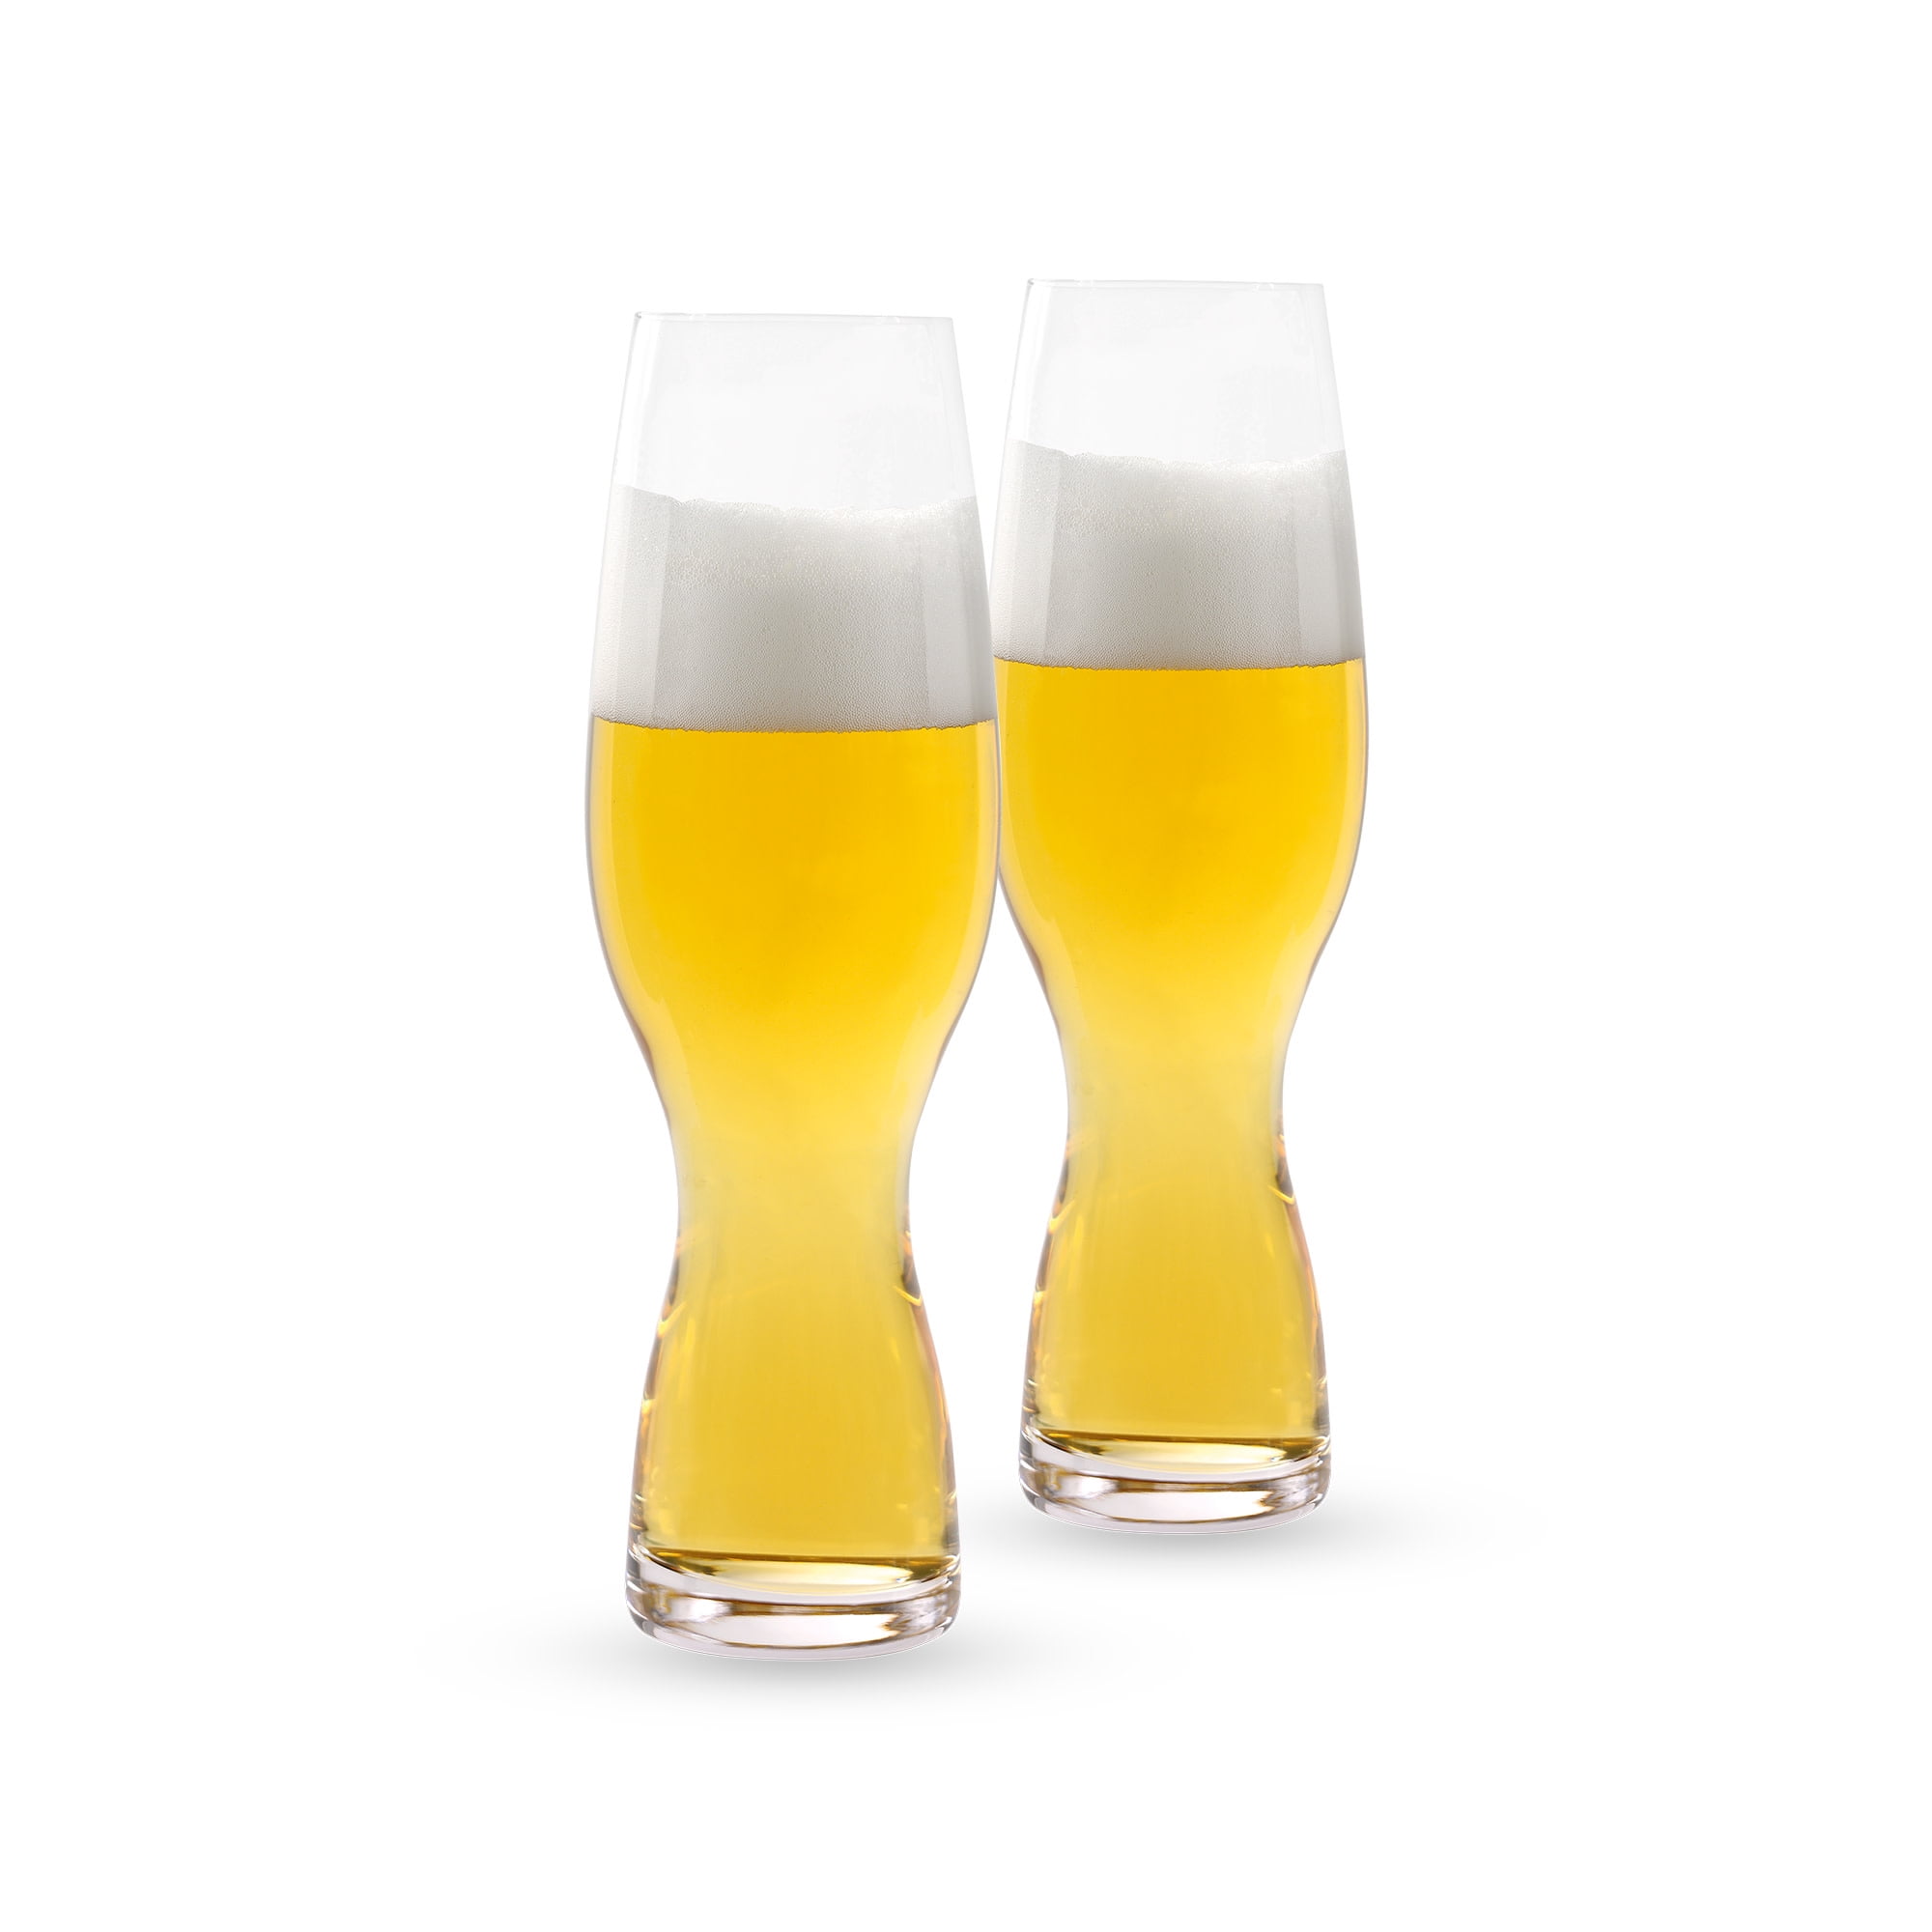 Spiegelau Craft Beer Ipa Glass Set Of 6 - Crystal, Modern Beer Glasses,  Dishwasher Safe, Professional Quality Beer Pint Glass Gift Set - 19.1 Oz :  Target